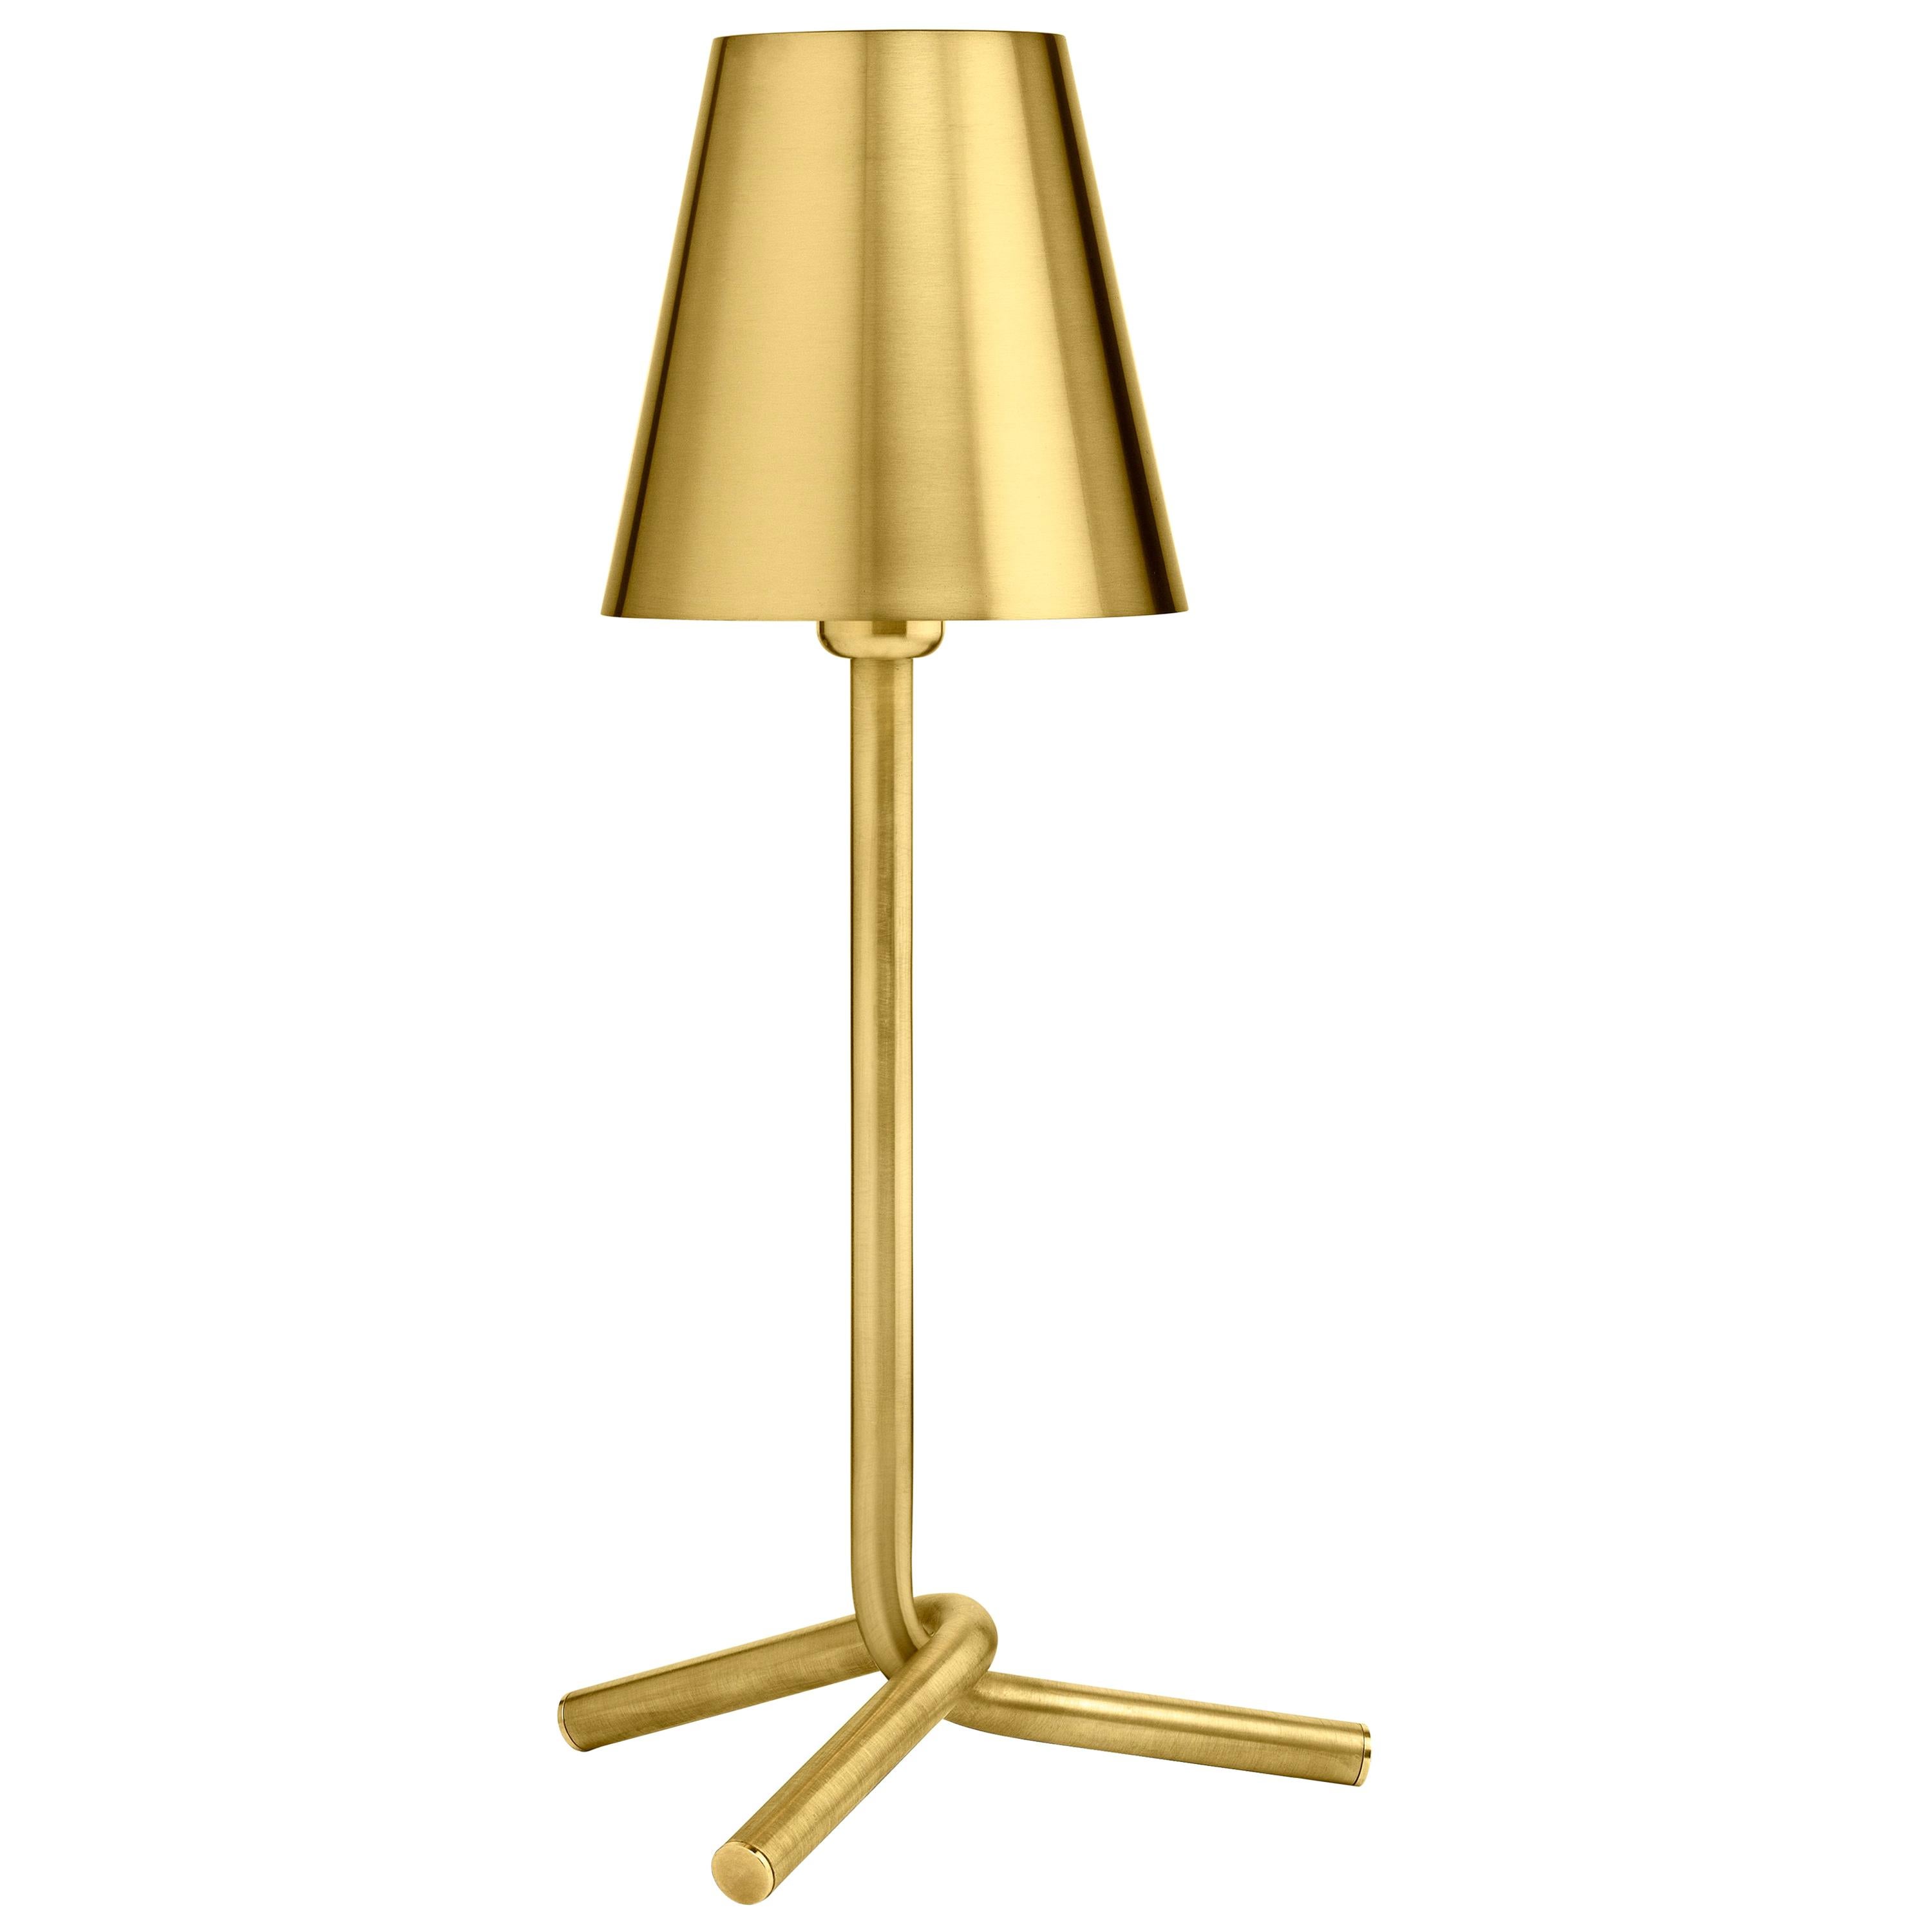 Ghidini 1961 Mio Table Lamp in Satin Brass by Aldo Cibic